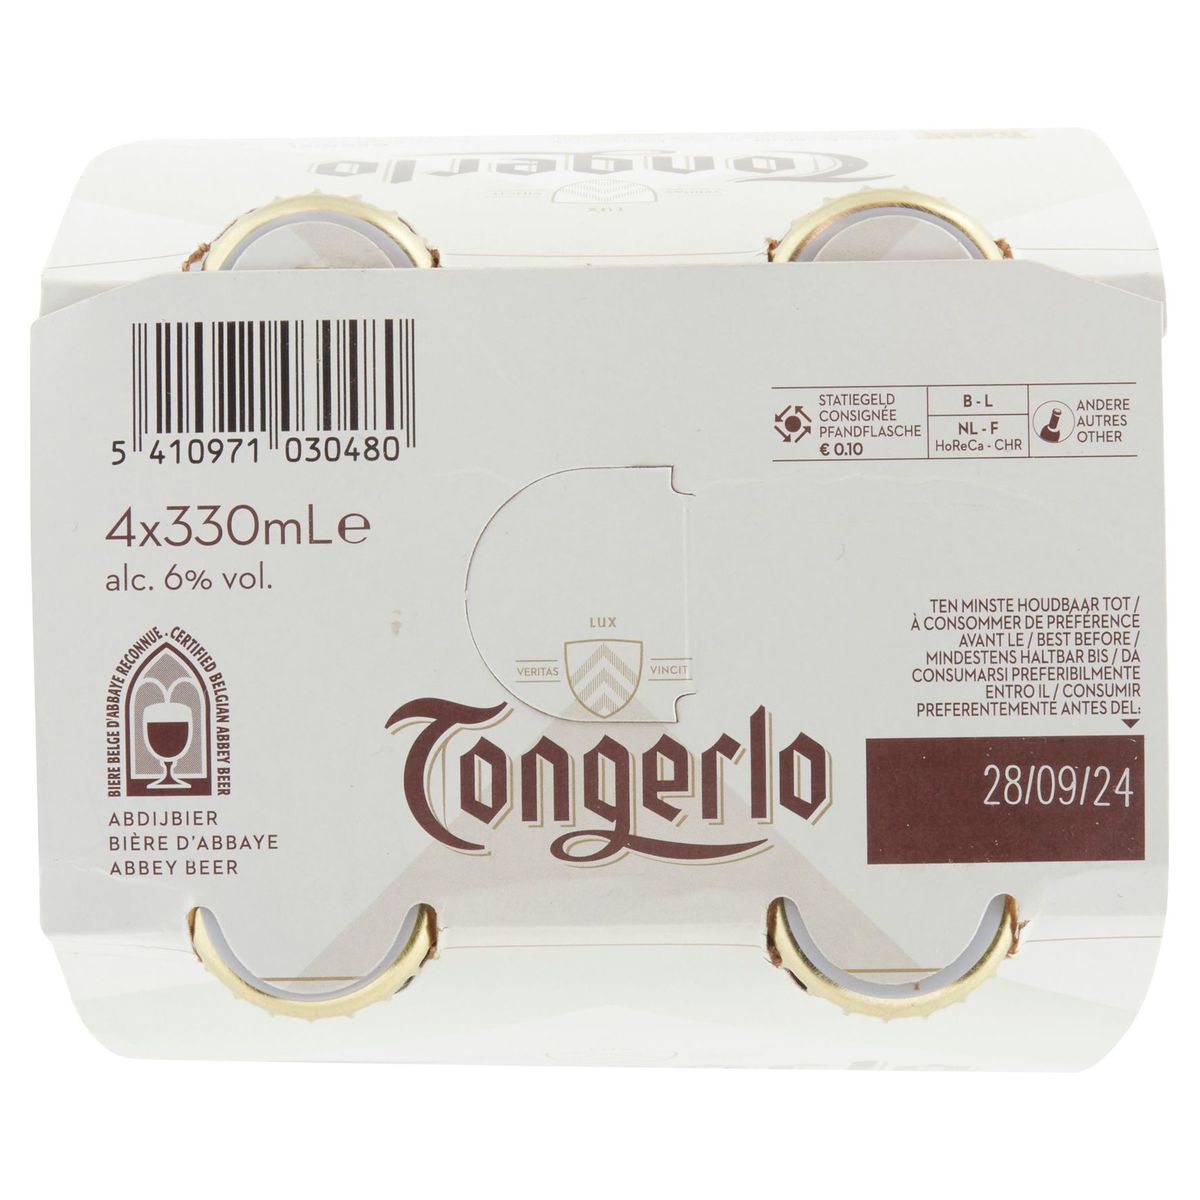 Tongerlo Blonde - Authentique bière belge d'abbaye - Bouteilles 4x33cl